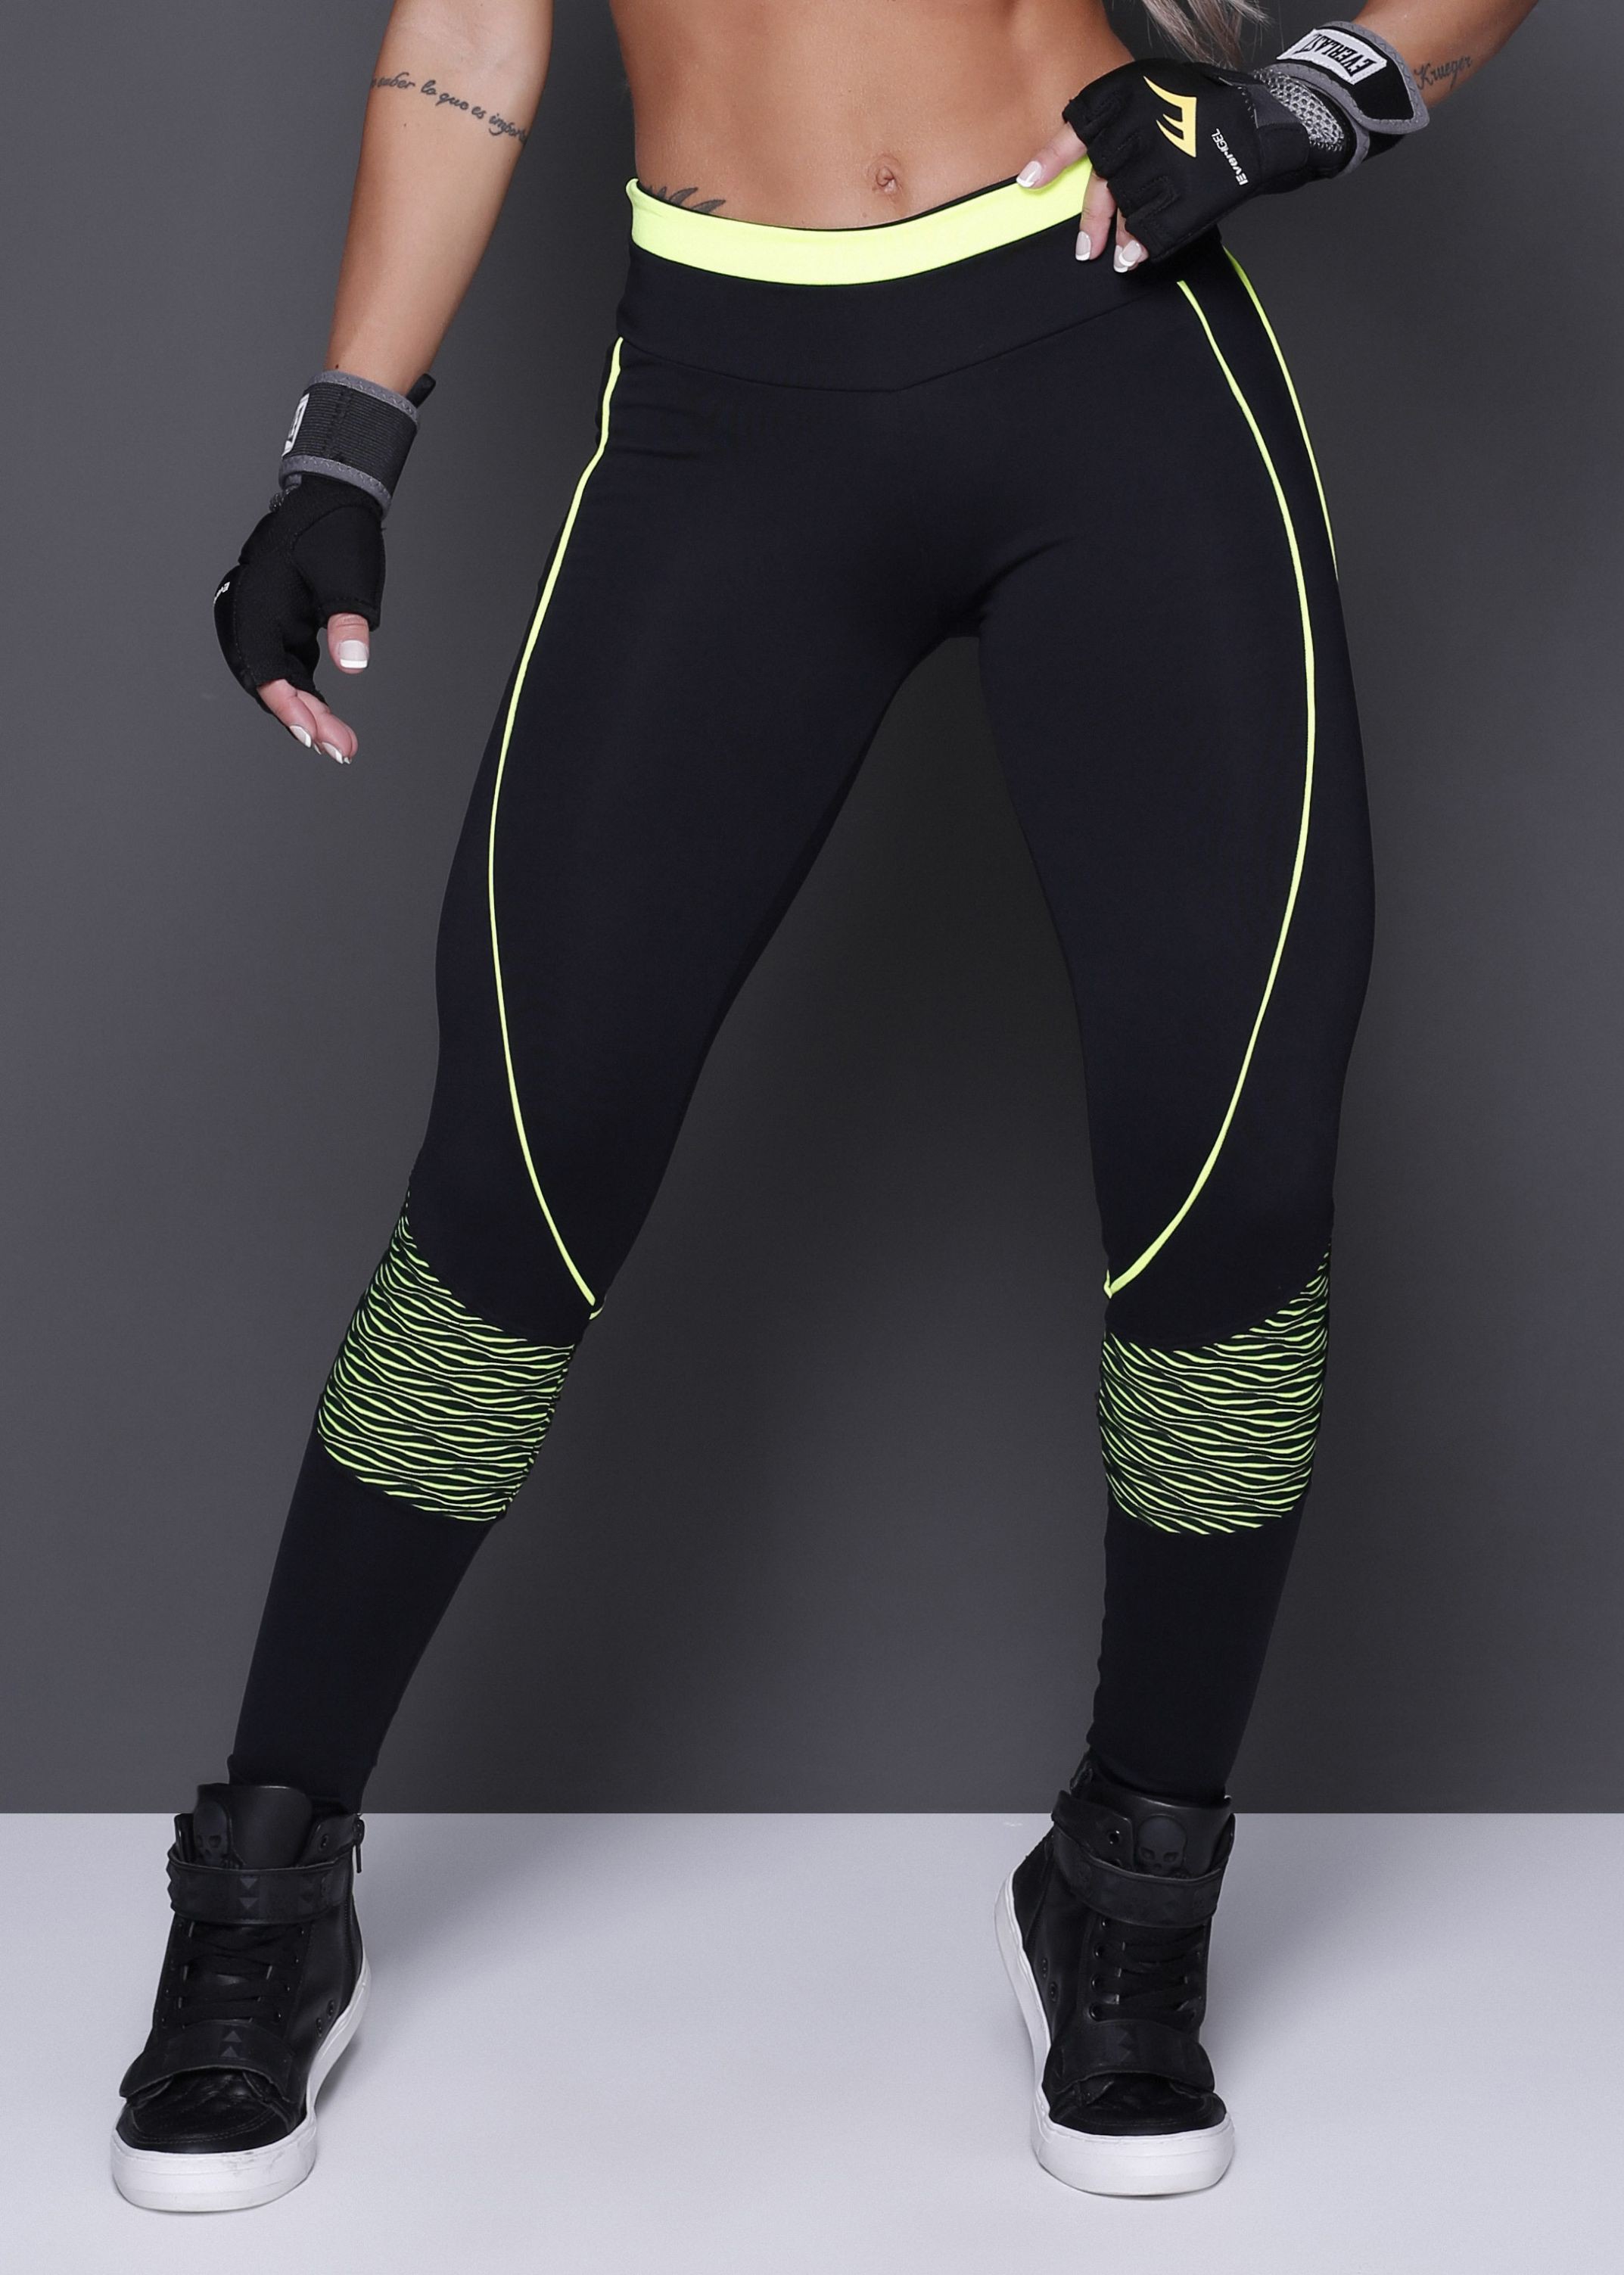 Black supplex capri fitness leggings for women, luxury sports leggings